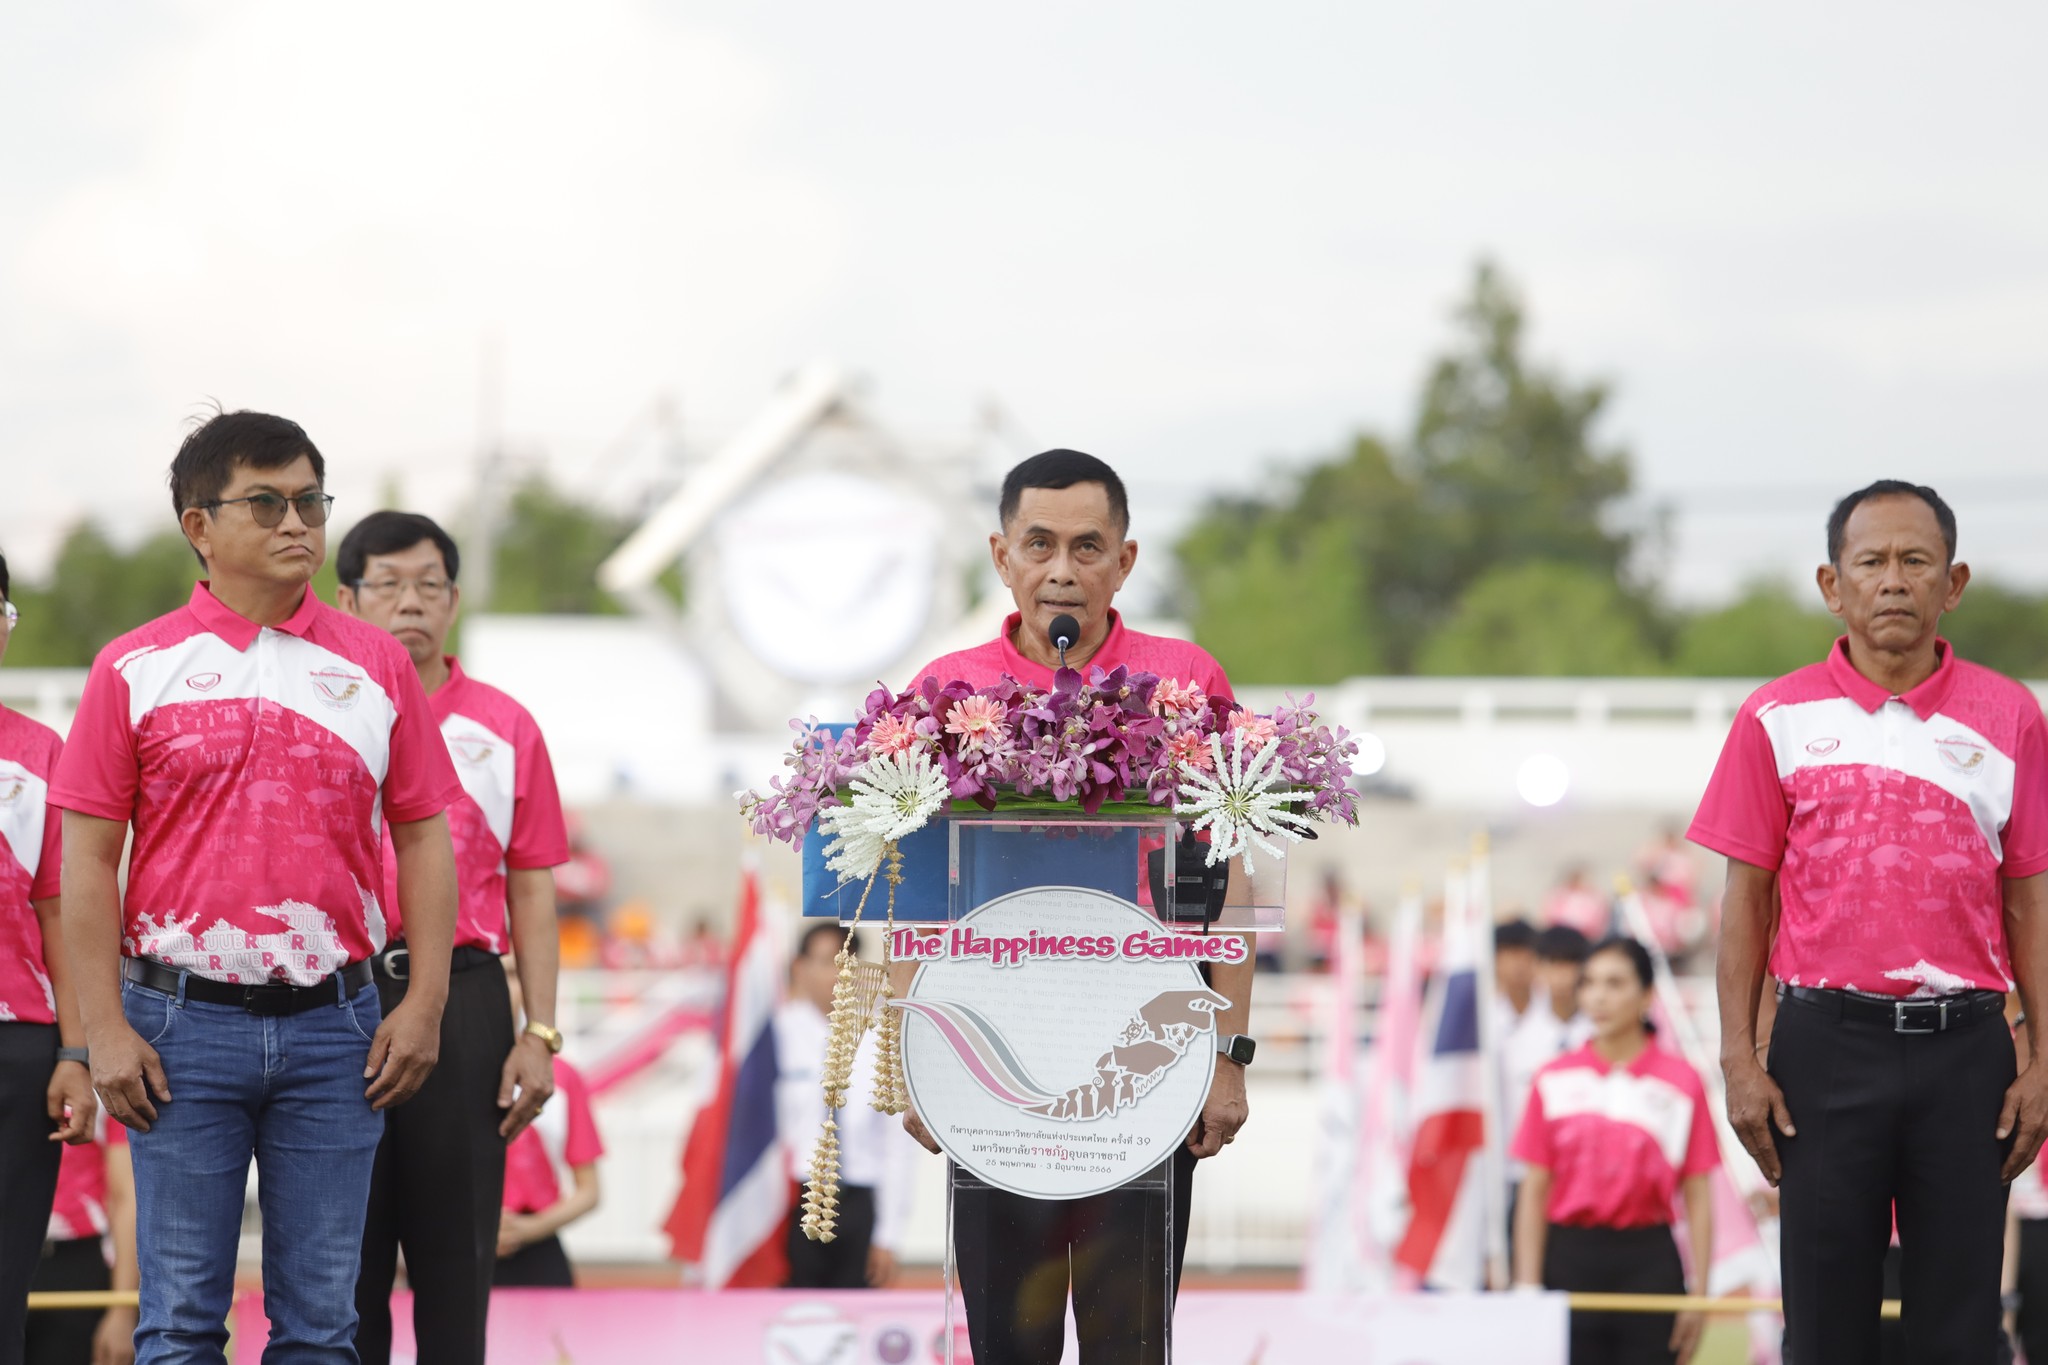 ทัพนักกีฬาบุคลากรมหาวิทยาลัยนครพนม ร่วมพิธีเปิดการแข่งขันกีฬาบุคลากรมหาวิทยาลัยแห่งประเทศไทย ครั้งที่ 39